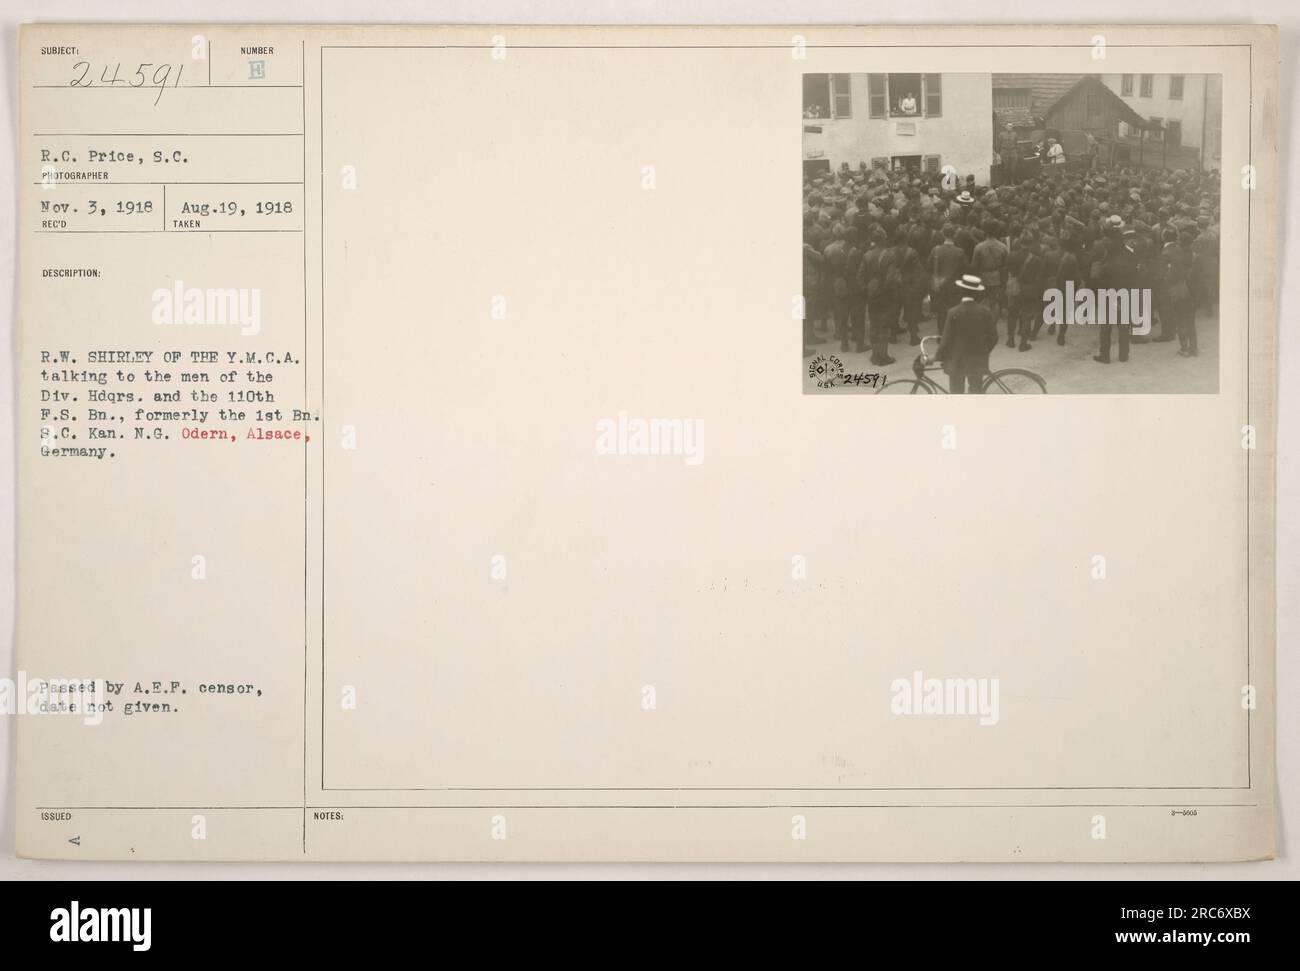 Y.M.C.A. Repräsentant R.W. Shirley spricht mit Soldaten vom Division Hauptquartier und dem 110. F.S. Bataillon (früher bekannt als das 1. Bataillon S.C. Kan. N.G.) in odern, Elsass, Deutschland. Das Foto wurde am 3. November 1918 vom Fotografen R.C. Price aufgenommen. Es ging am 19. August 1918 ein, aber das Datum, an dem es vom A.E.P. Zensor genehmigt wurde, ist unbekannt. Stockfoto